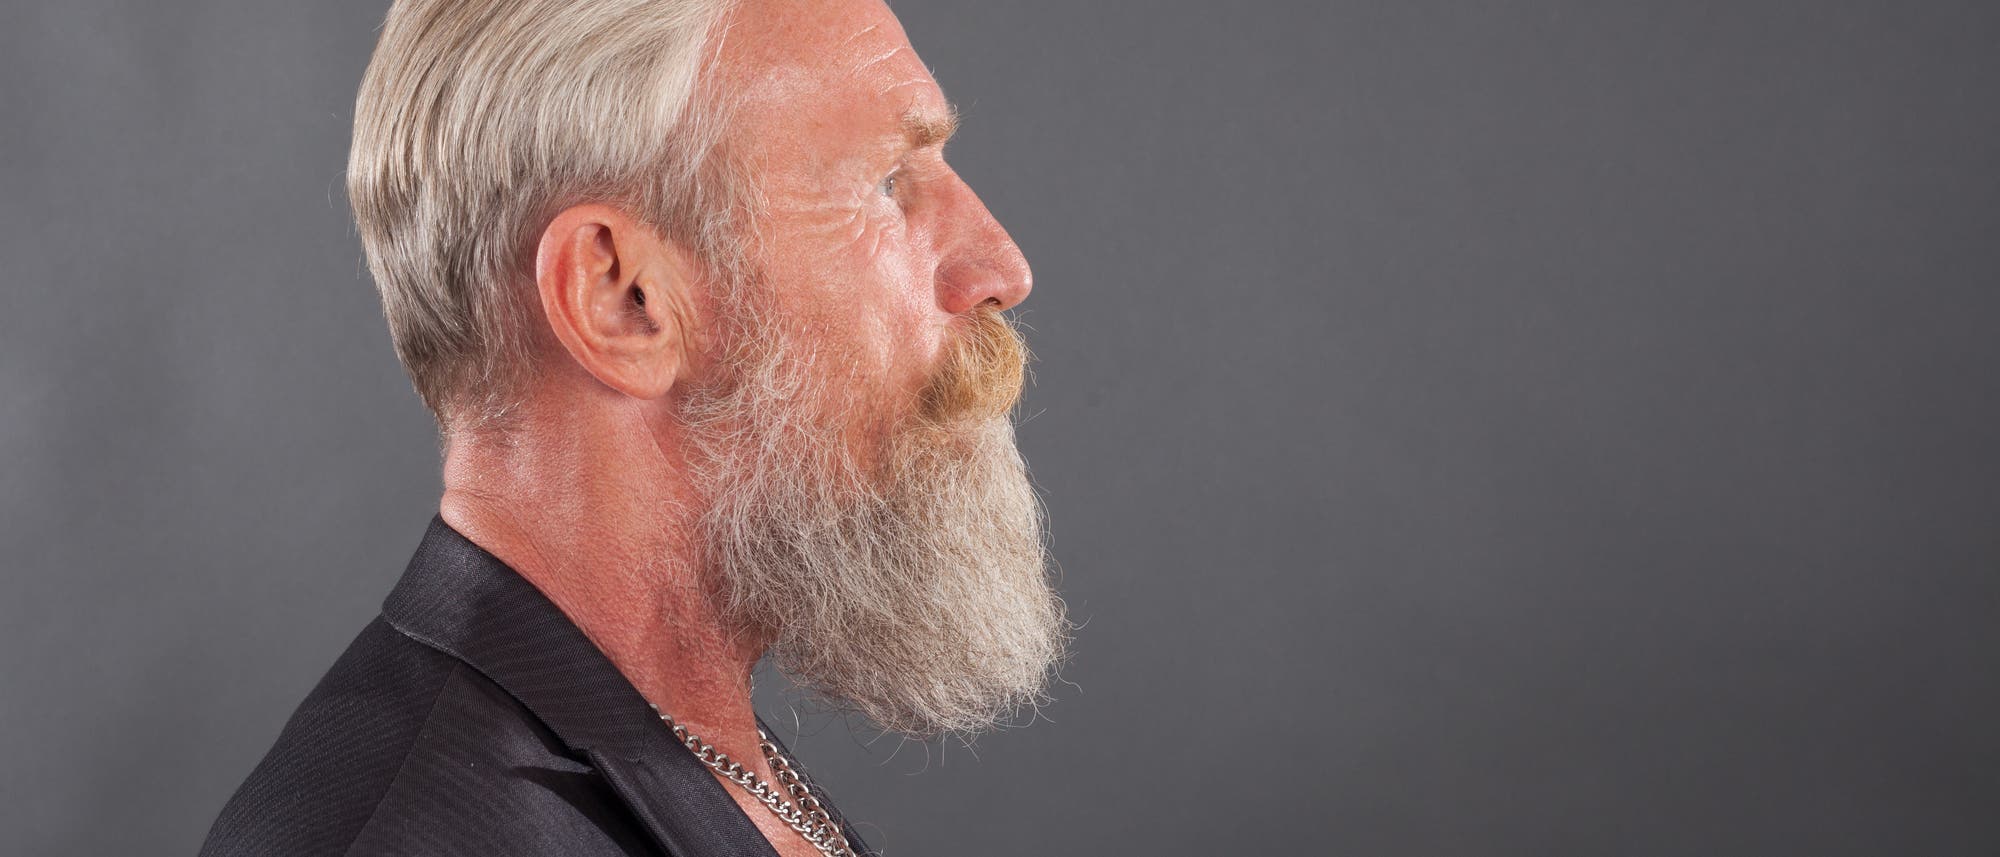 Älterer Mann mit weißem Bart und grauem Haar